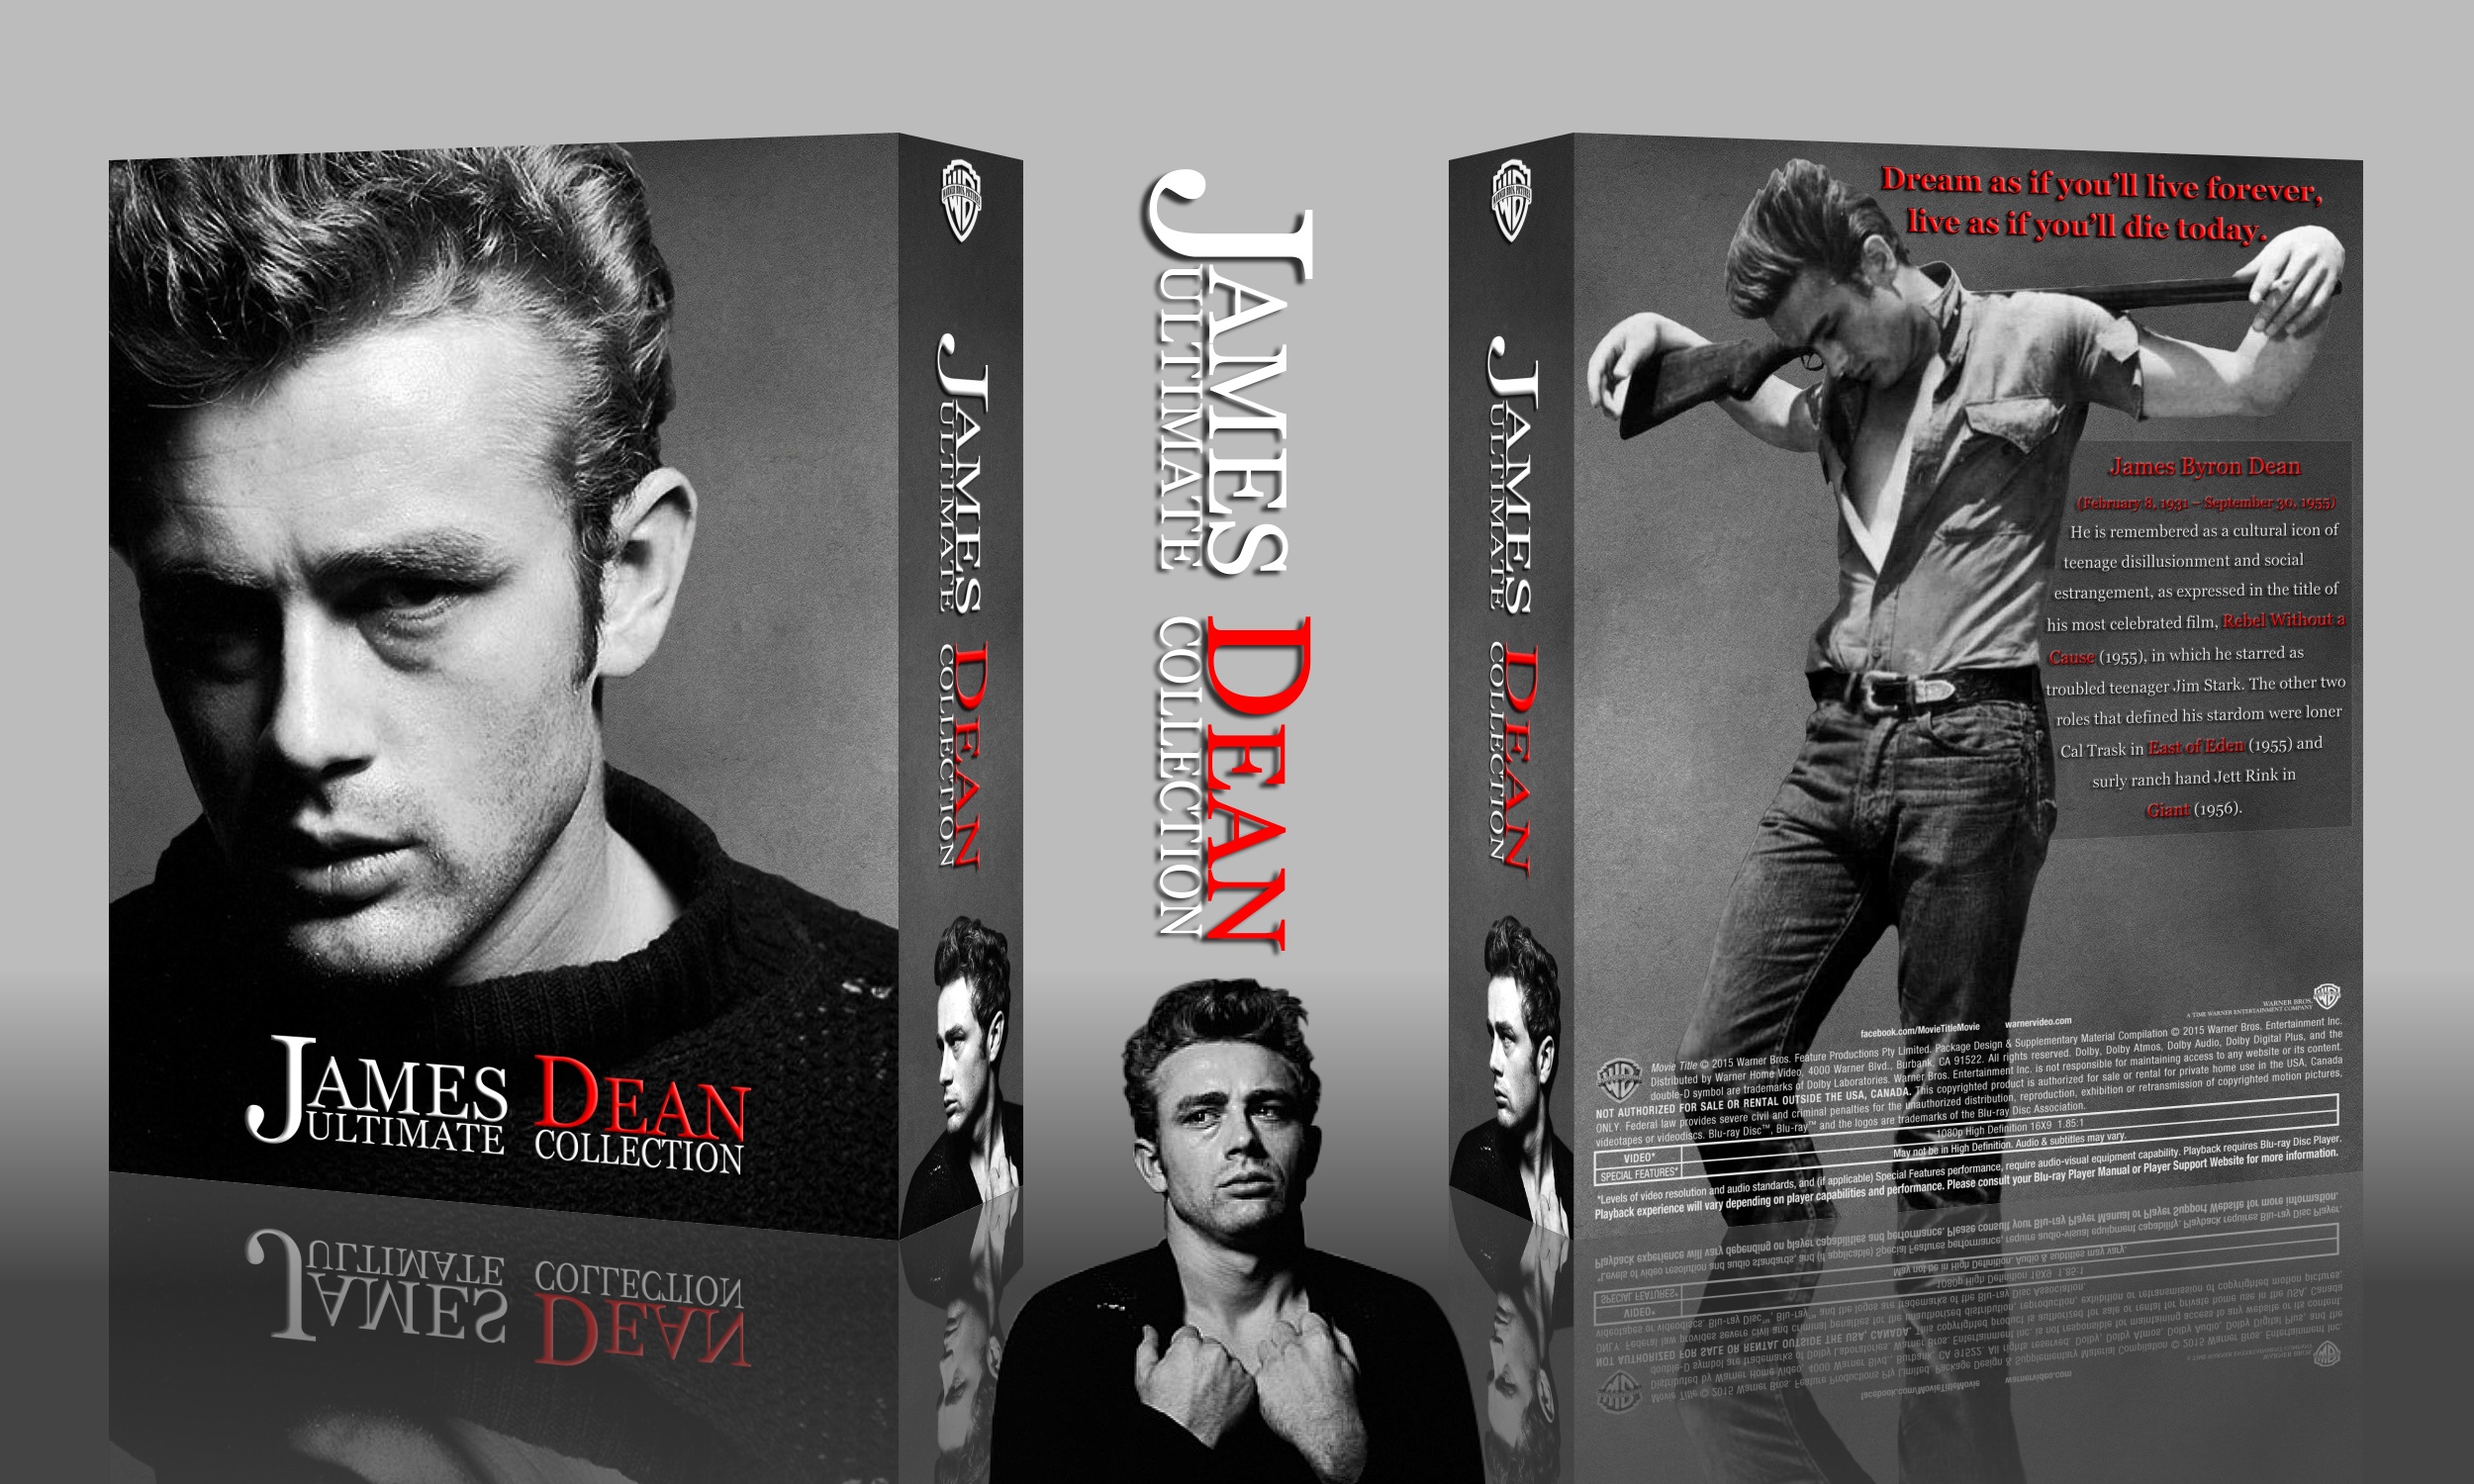 James Dean Collection box cover